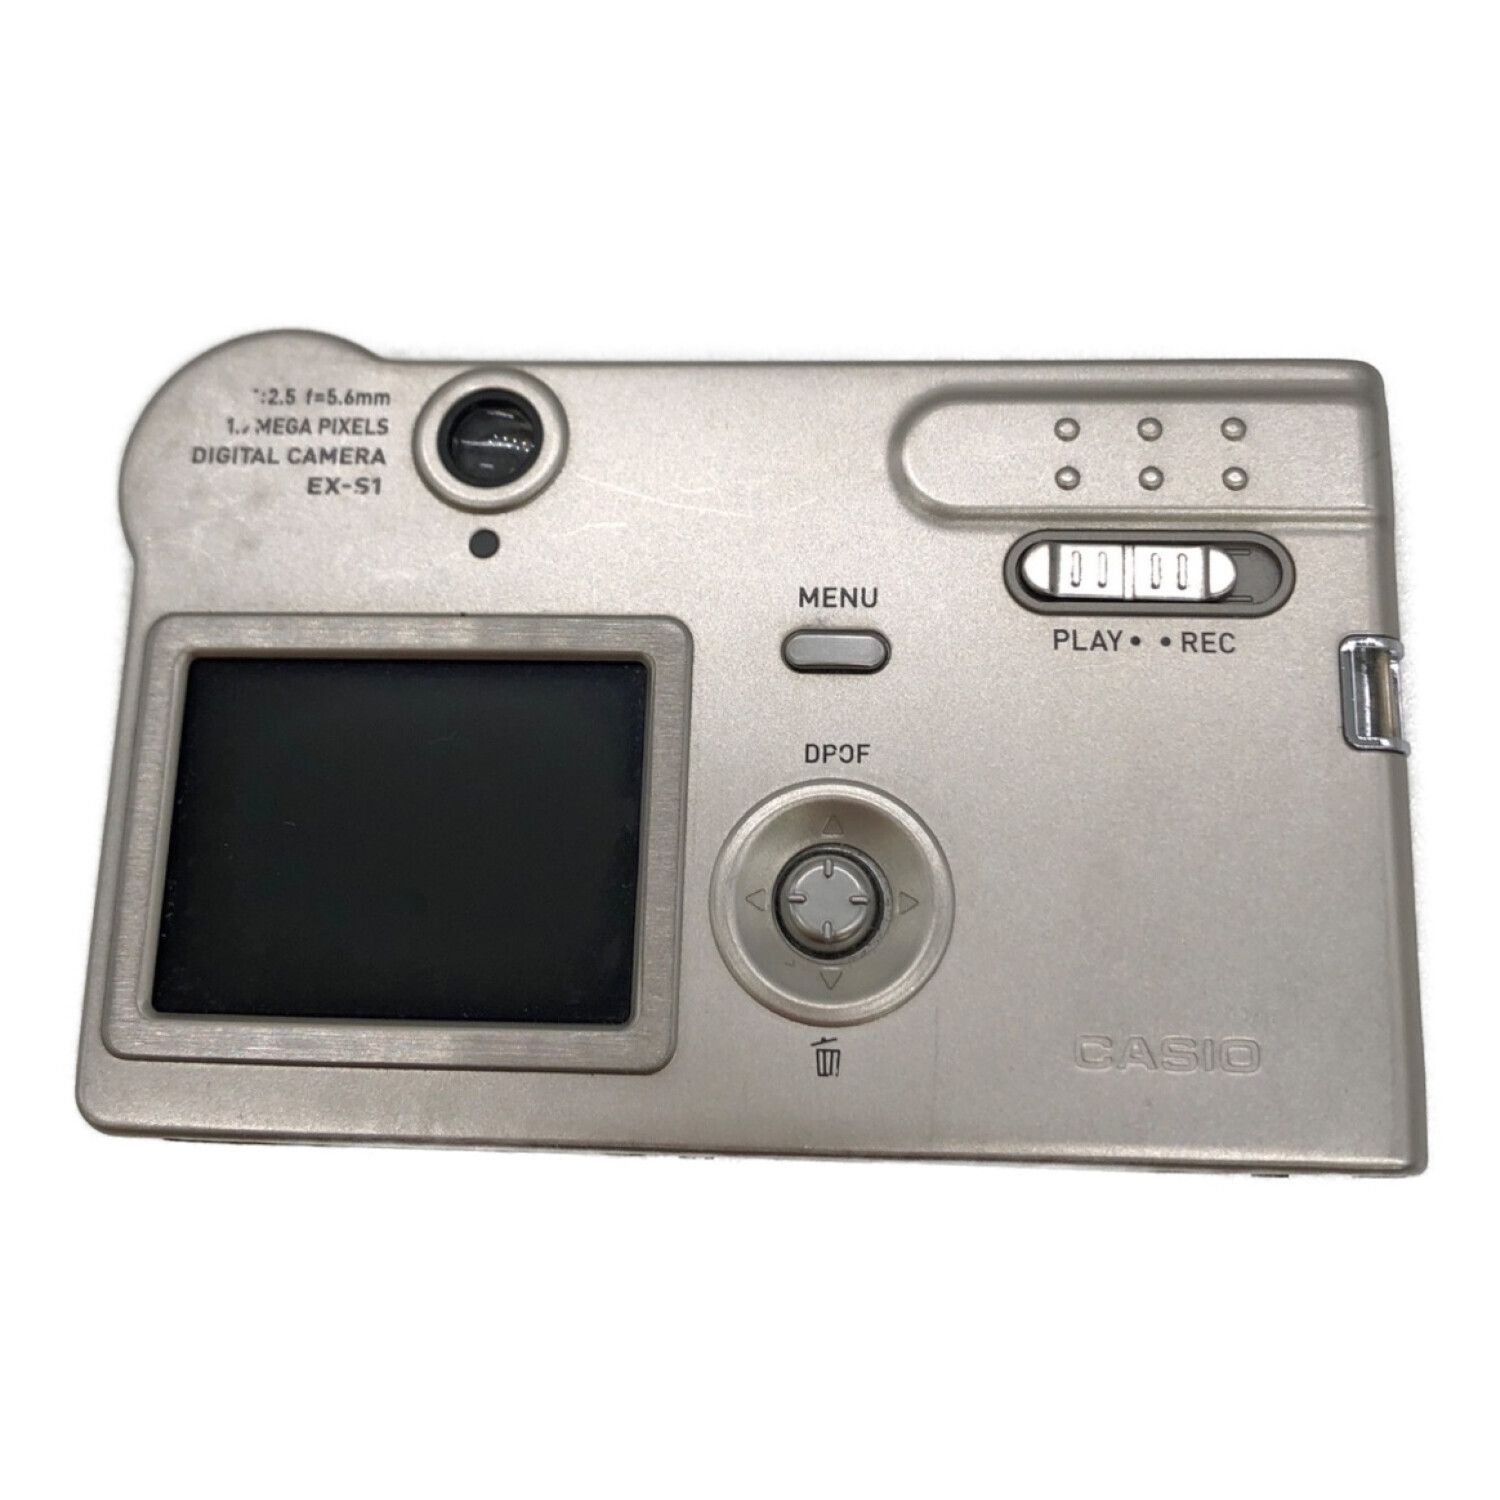 コンパクトデジタルカメラの名機カシオ「EX-ZR1300」